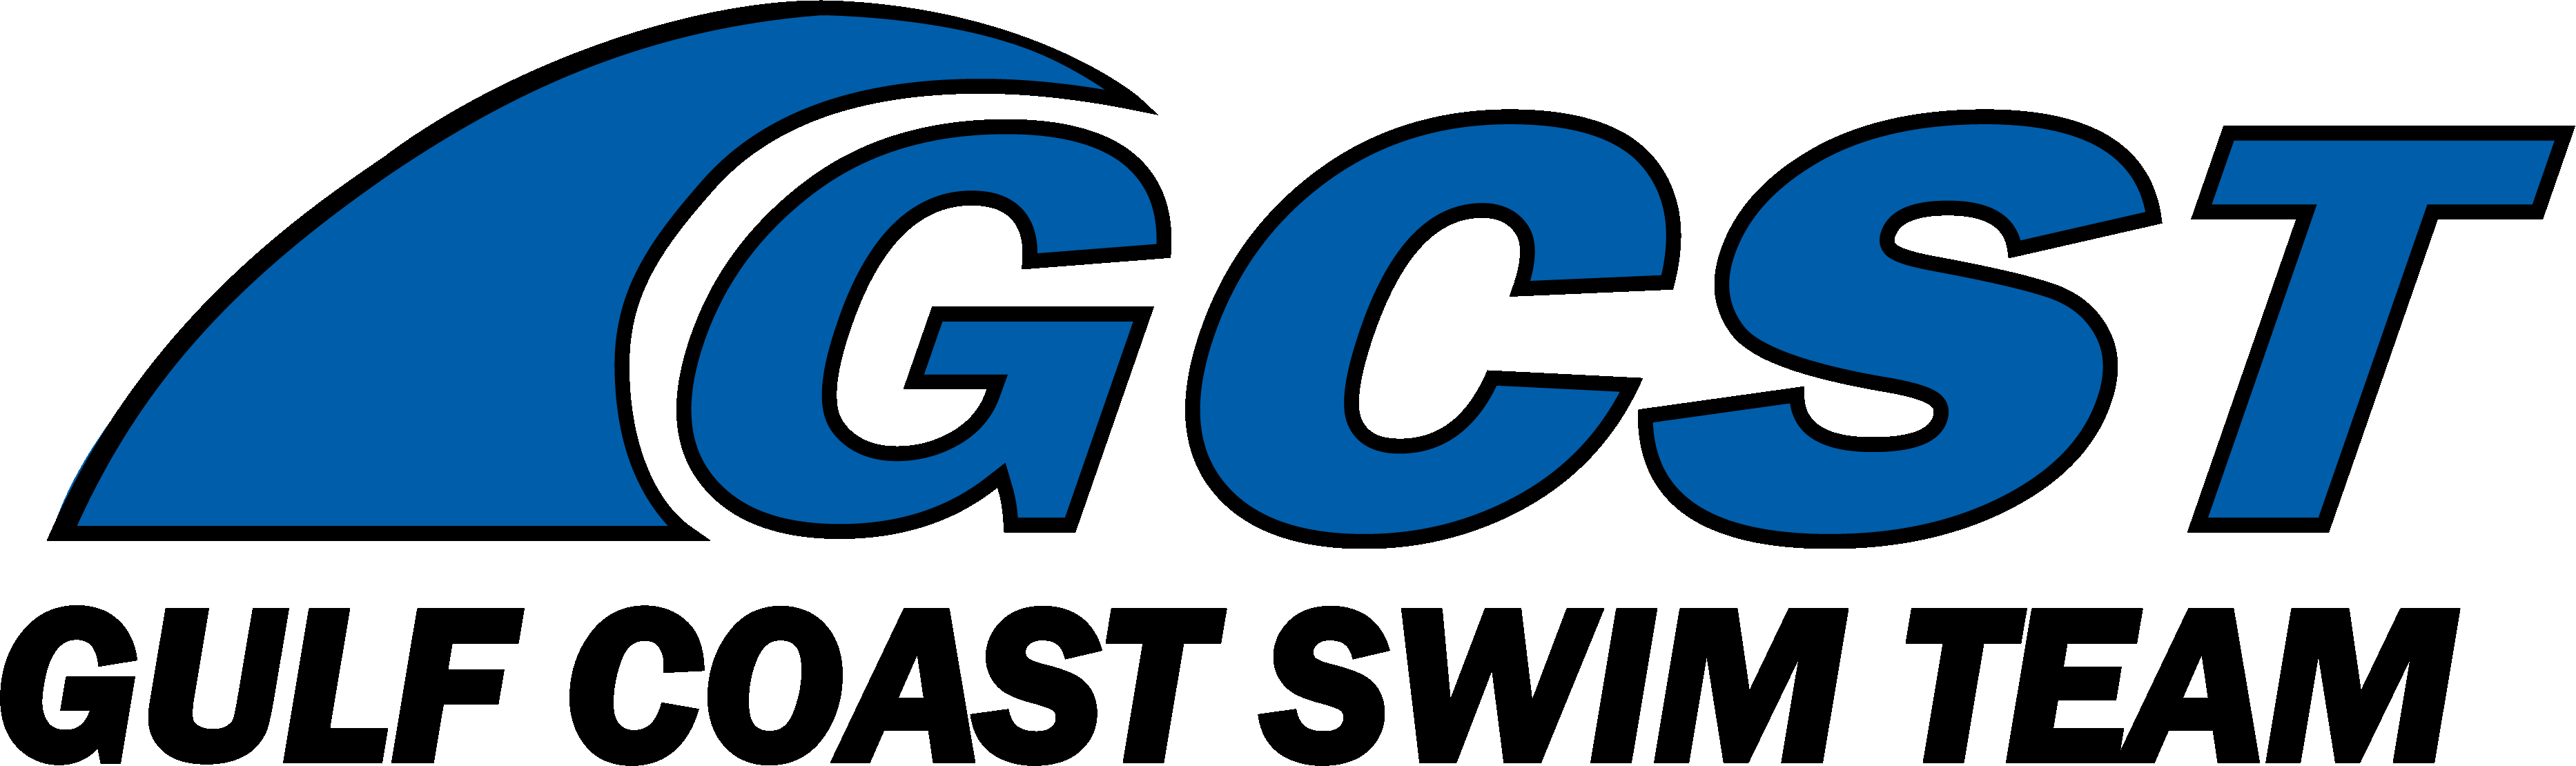 Gulf Coast Swim Team